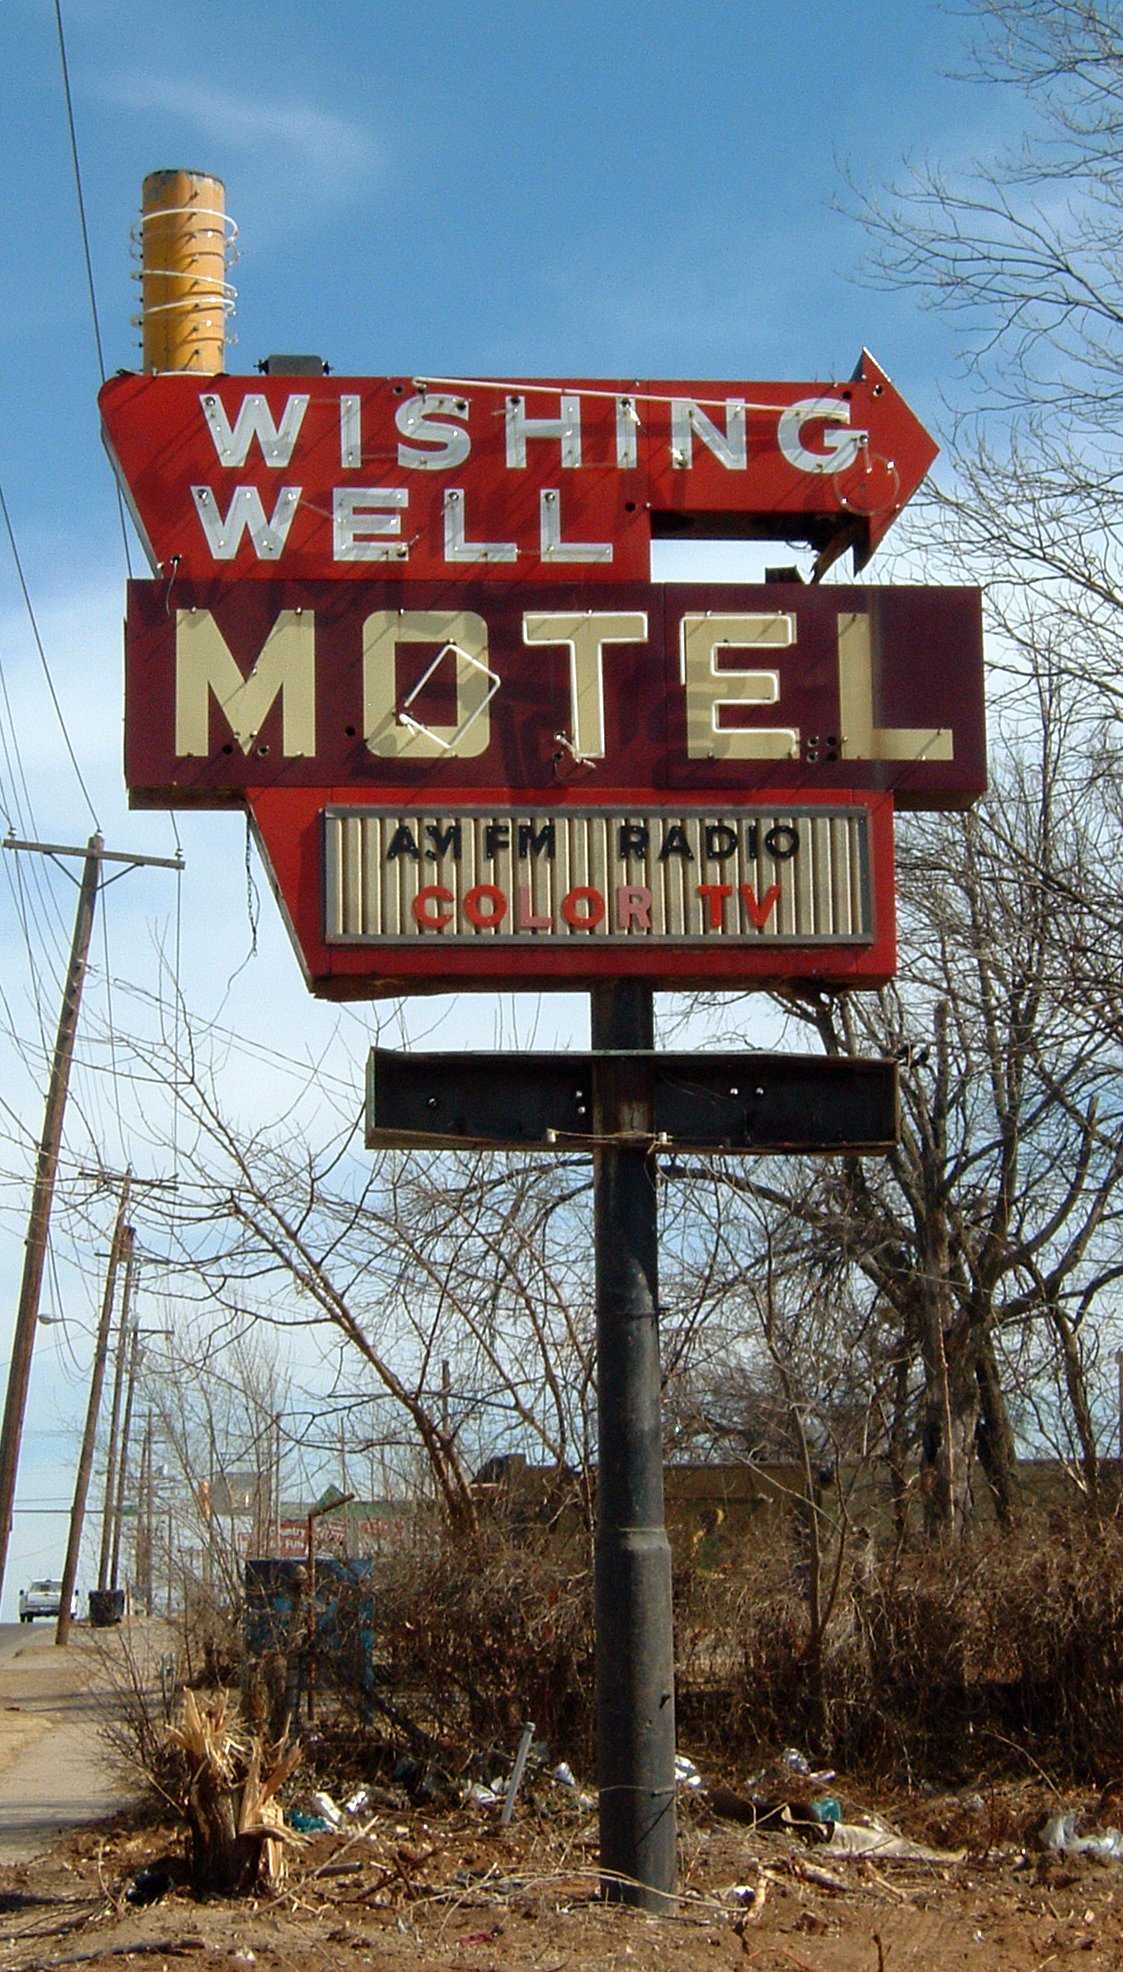 Wishing Well Motel - Oklahoma City, Oklahoma U.S.A. - February 28, 2006